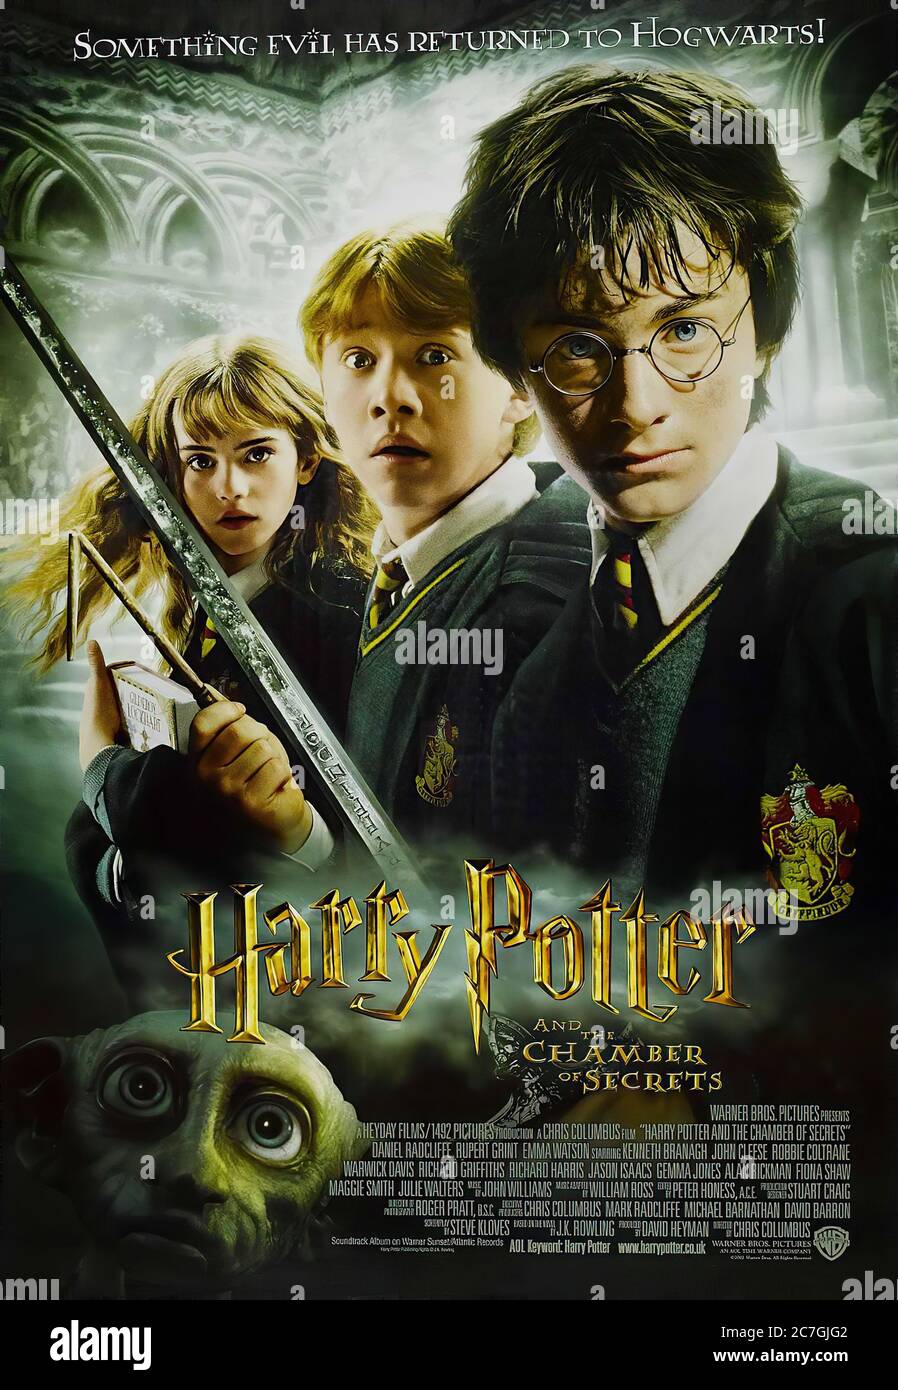 Harry Potter et la Chambre des secrets - affiche de film Banque D'Images